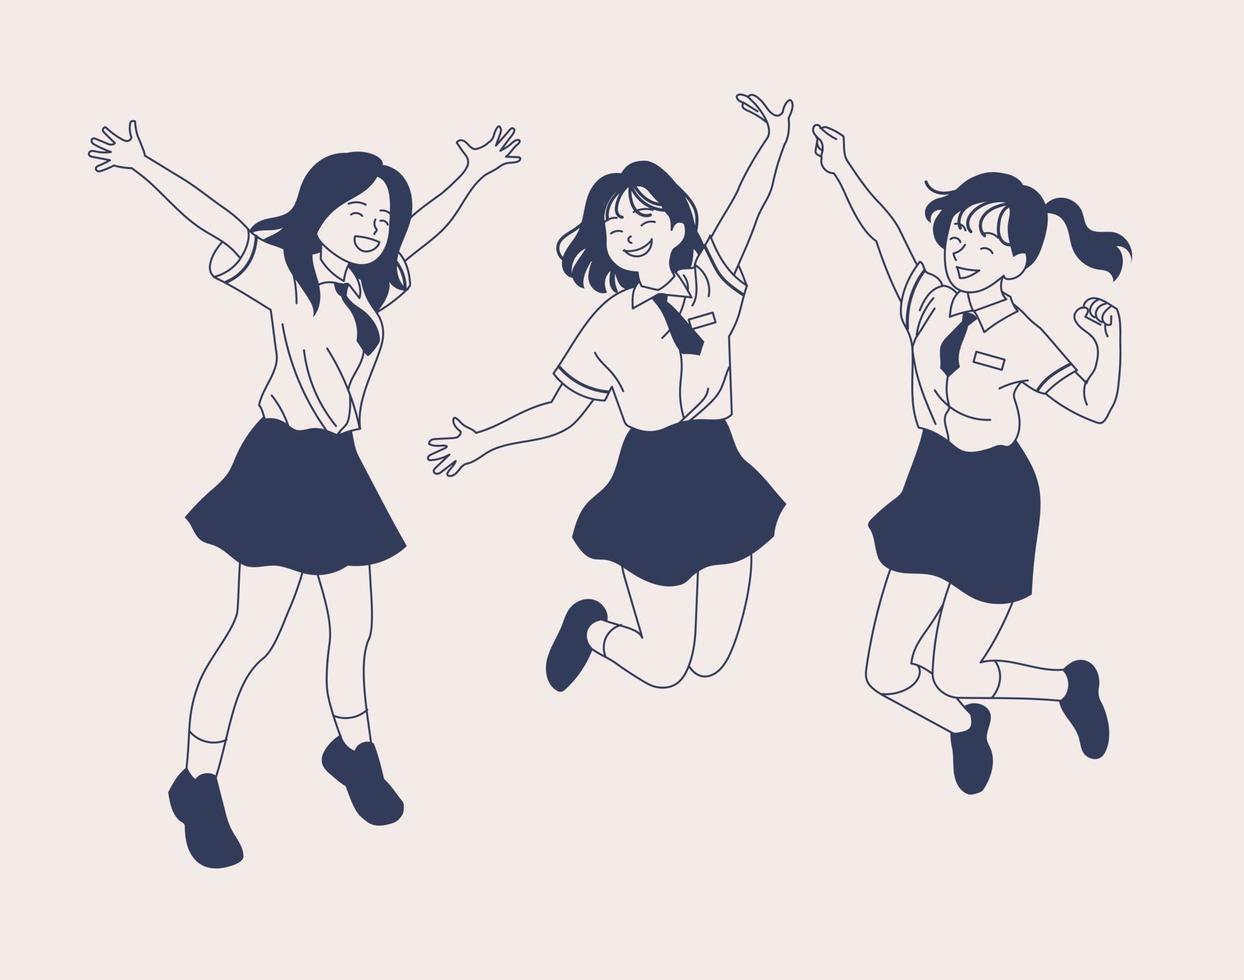 en flicka i skoluniform hoppar av spänning. handritade illustrationer för stilvektordesign. vektor